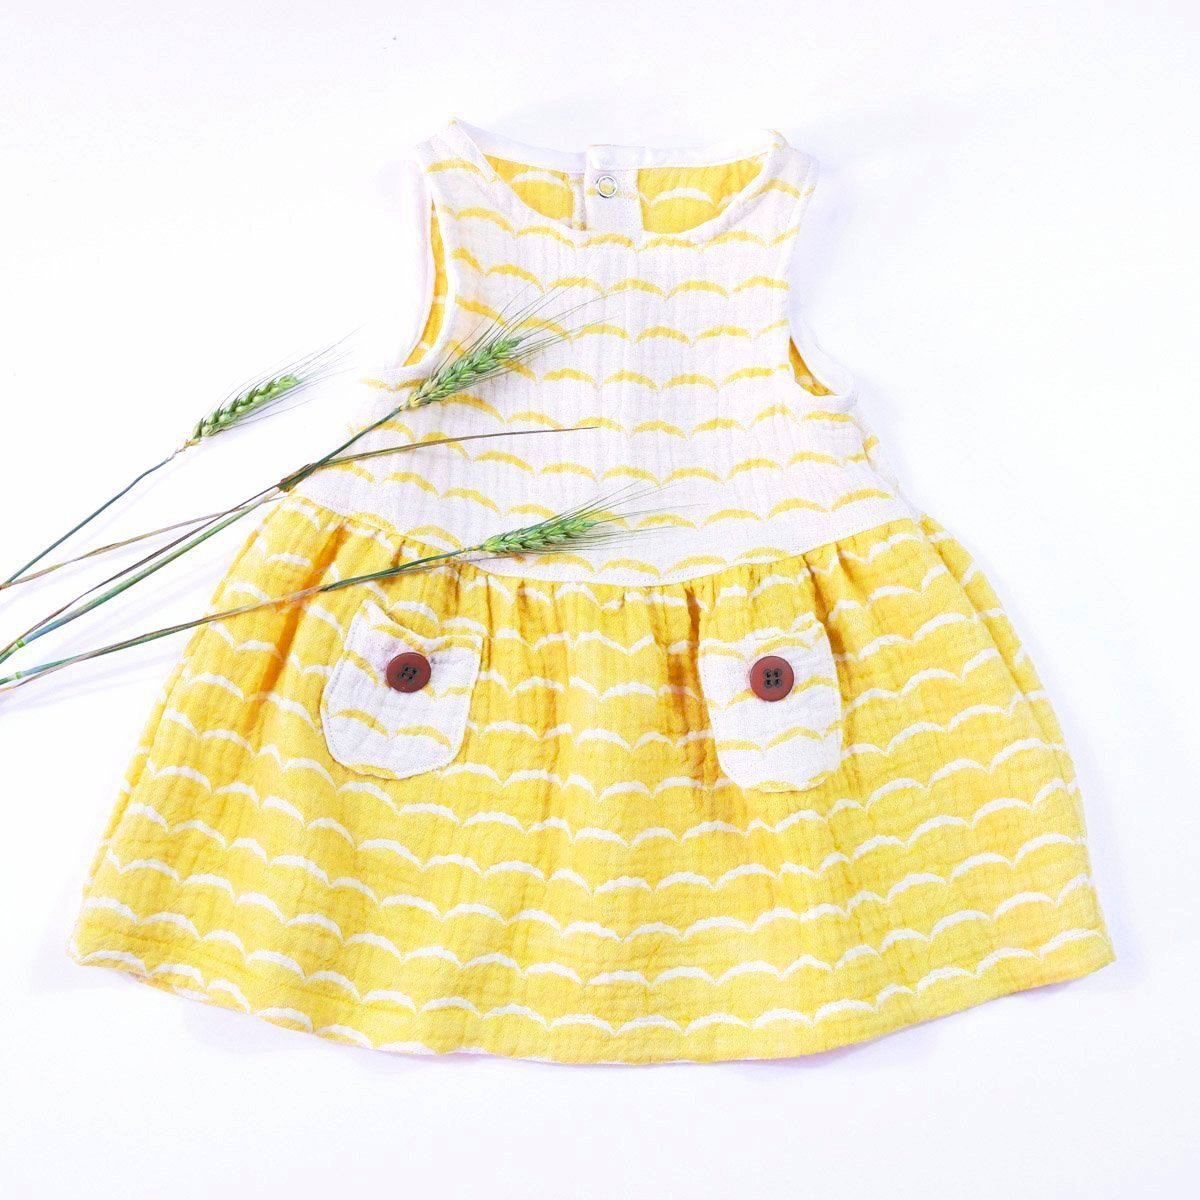 Ikatee - HELSINKI Kids dress - 3/12Y - Paper Sewing Pattern